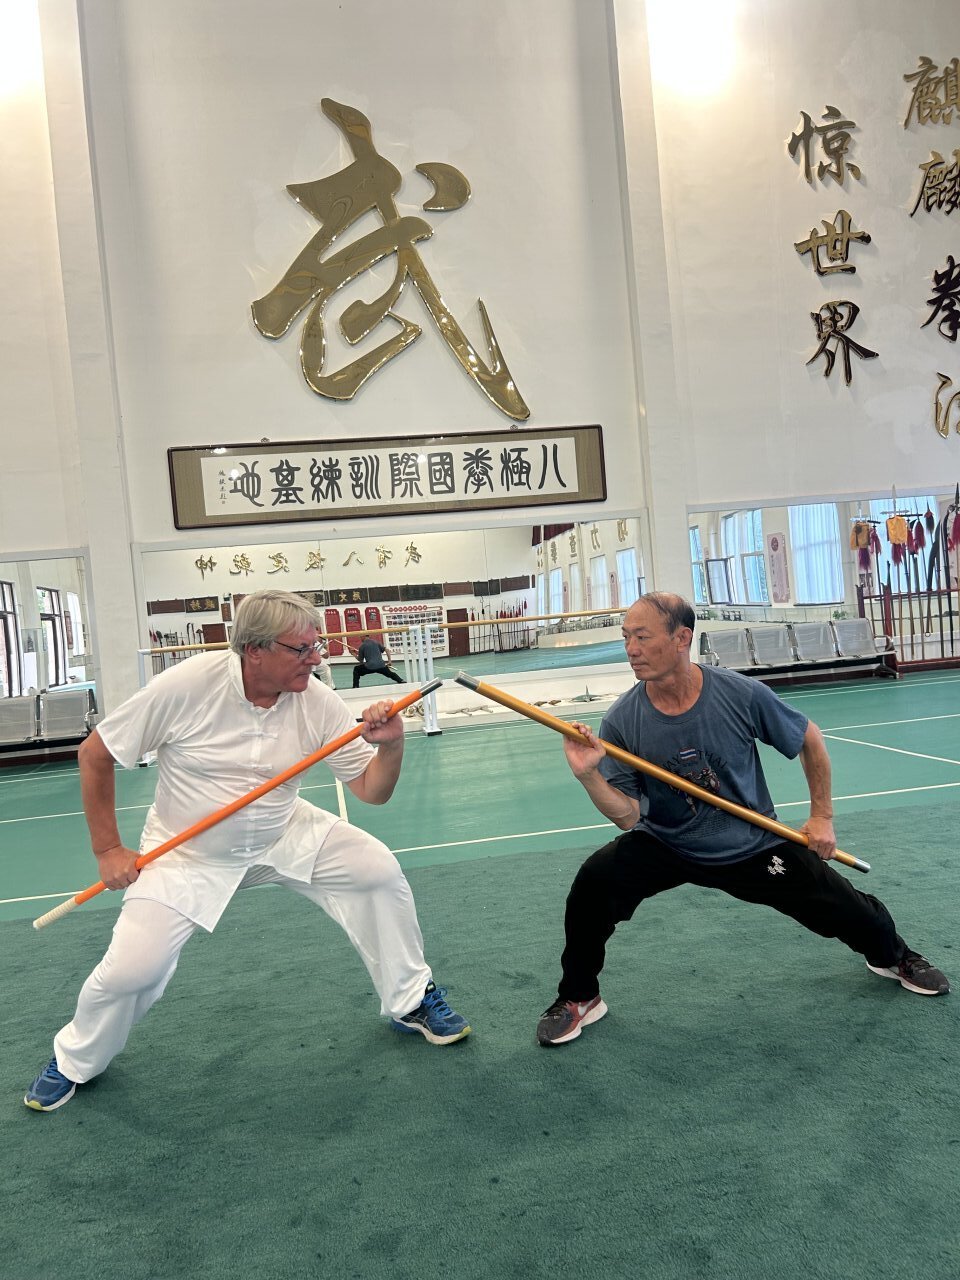 7月11日,在沧州青县八极拳国际训练基地,来自丹麦的西蒙把盘古日月